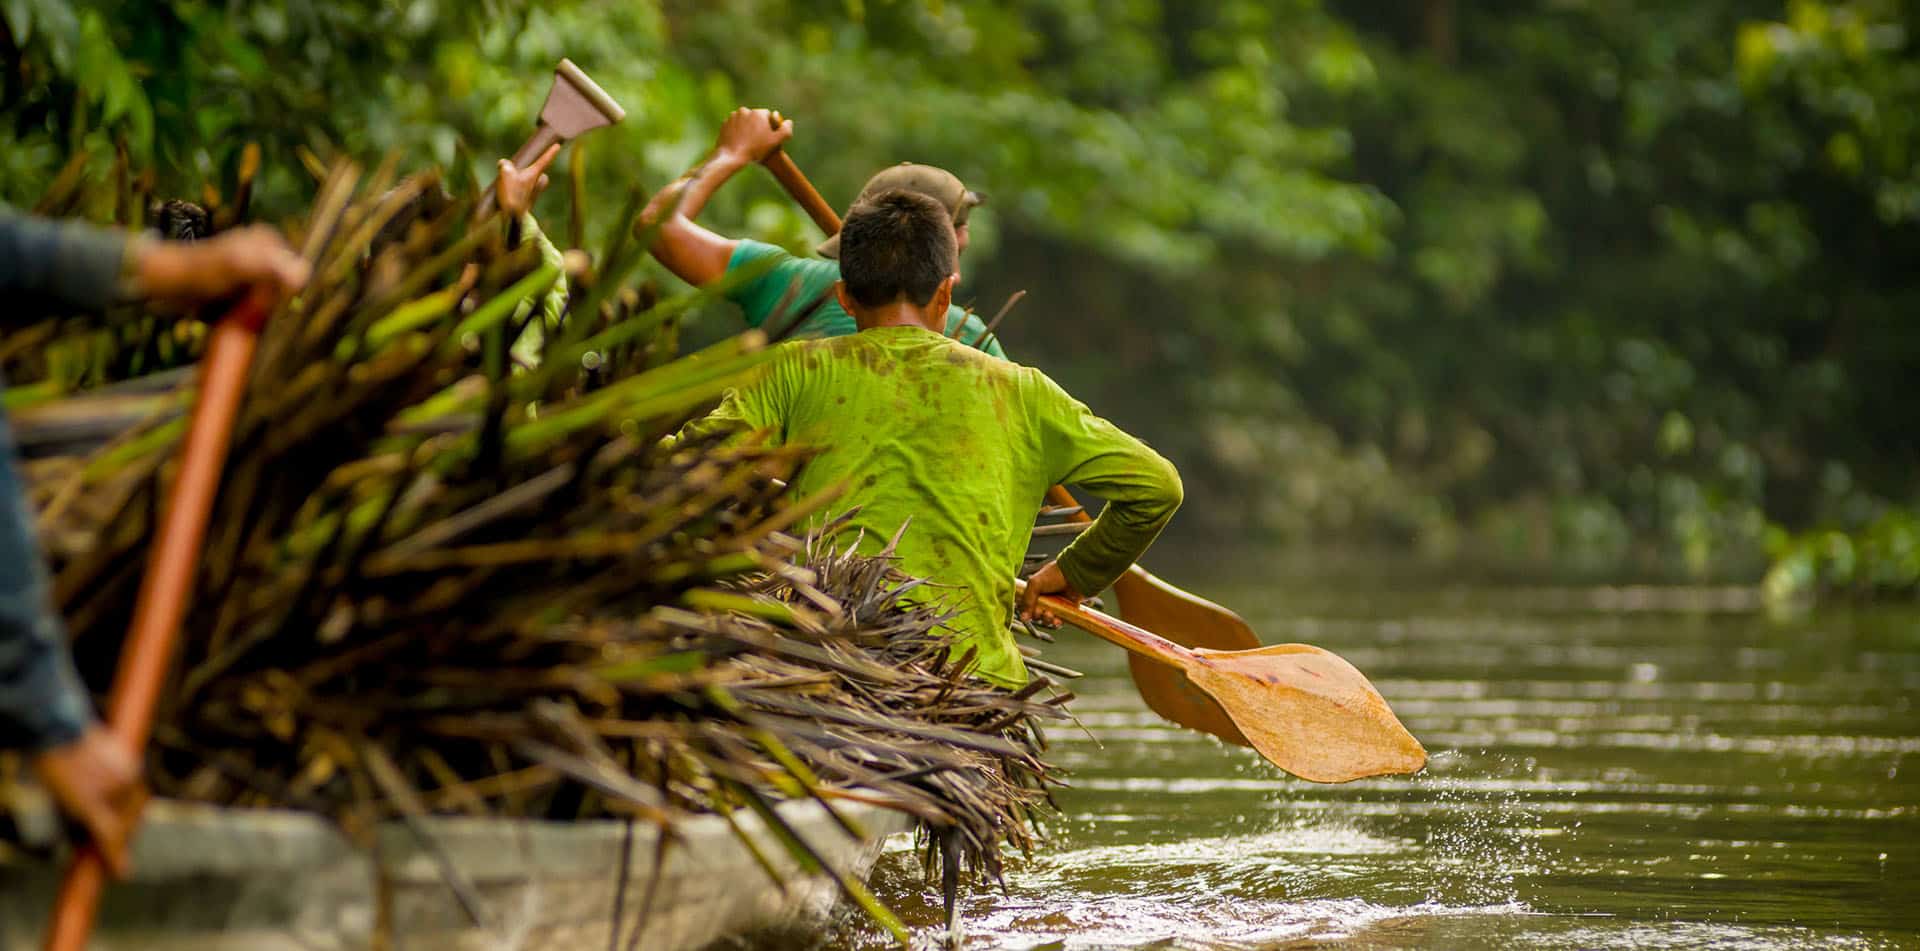 Canoe in Yasuni National Park in Ecuador